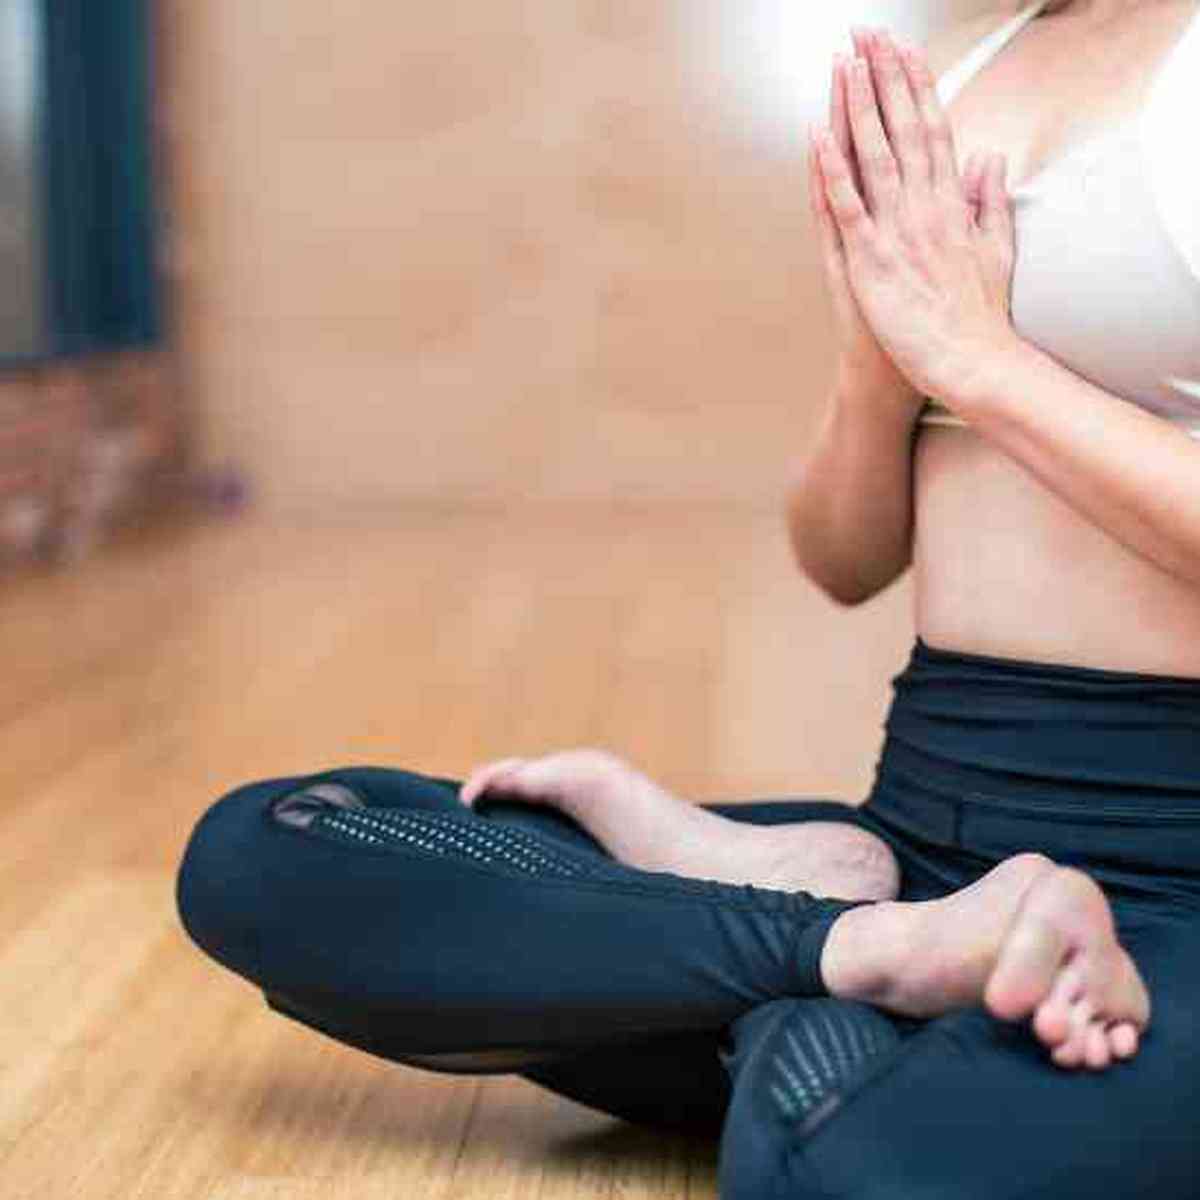 Posições de yoga! Confira dicas de como manter o equilíbrio na sua prática  - Viva Saúde